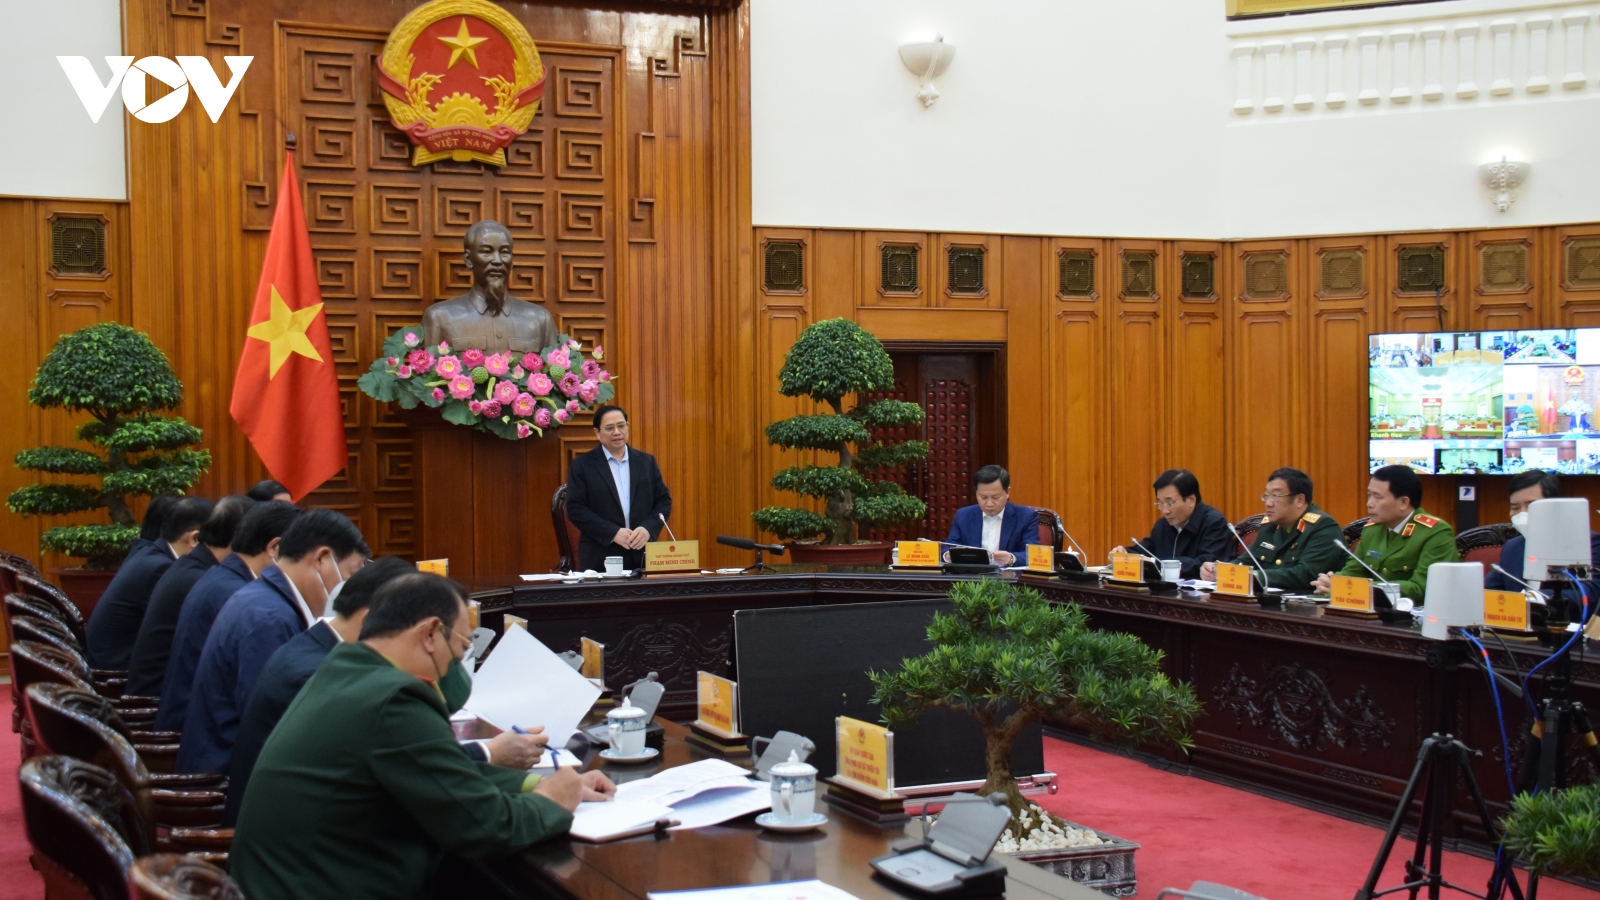 Thủ tướng họp trực tuyến với 8 tỉnh về công tác phòng, chống, khắc phục hậu quả mưa lũ